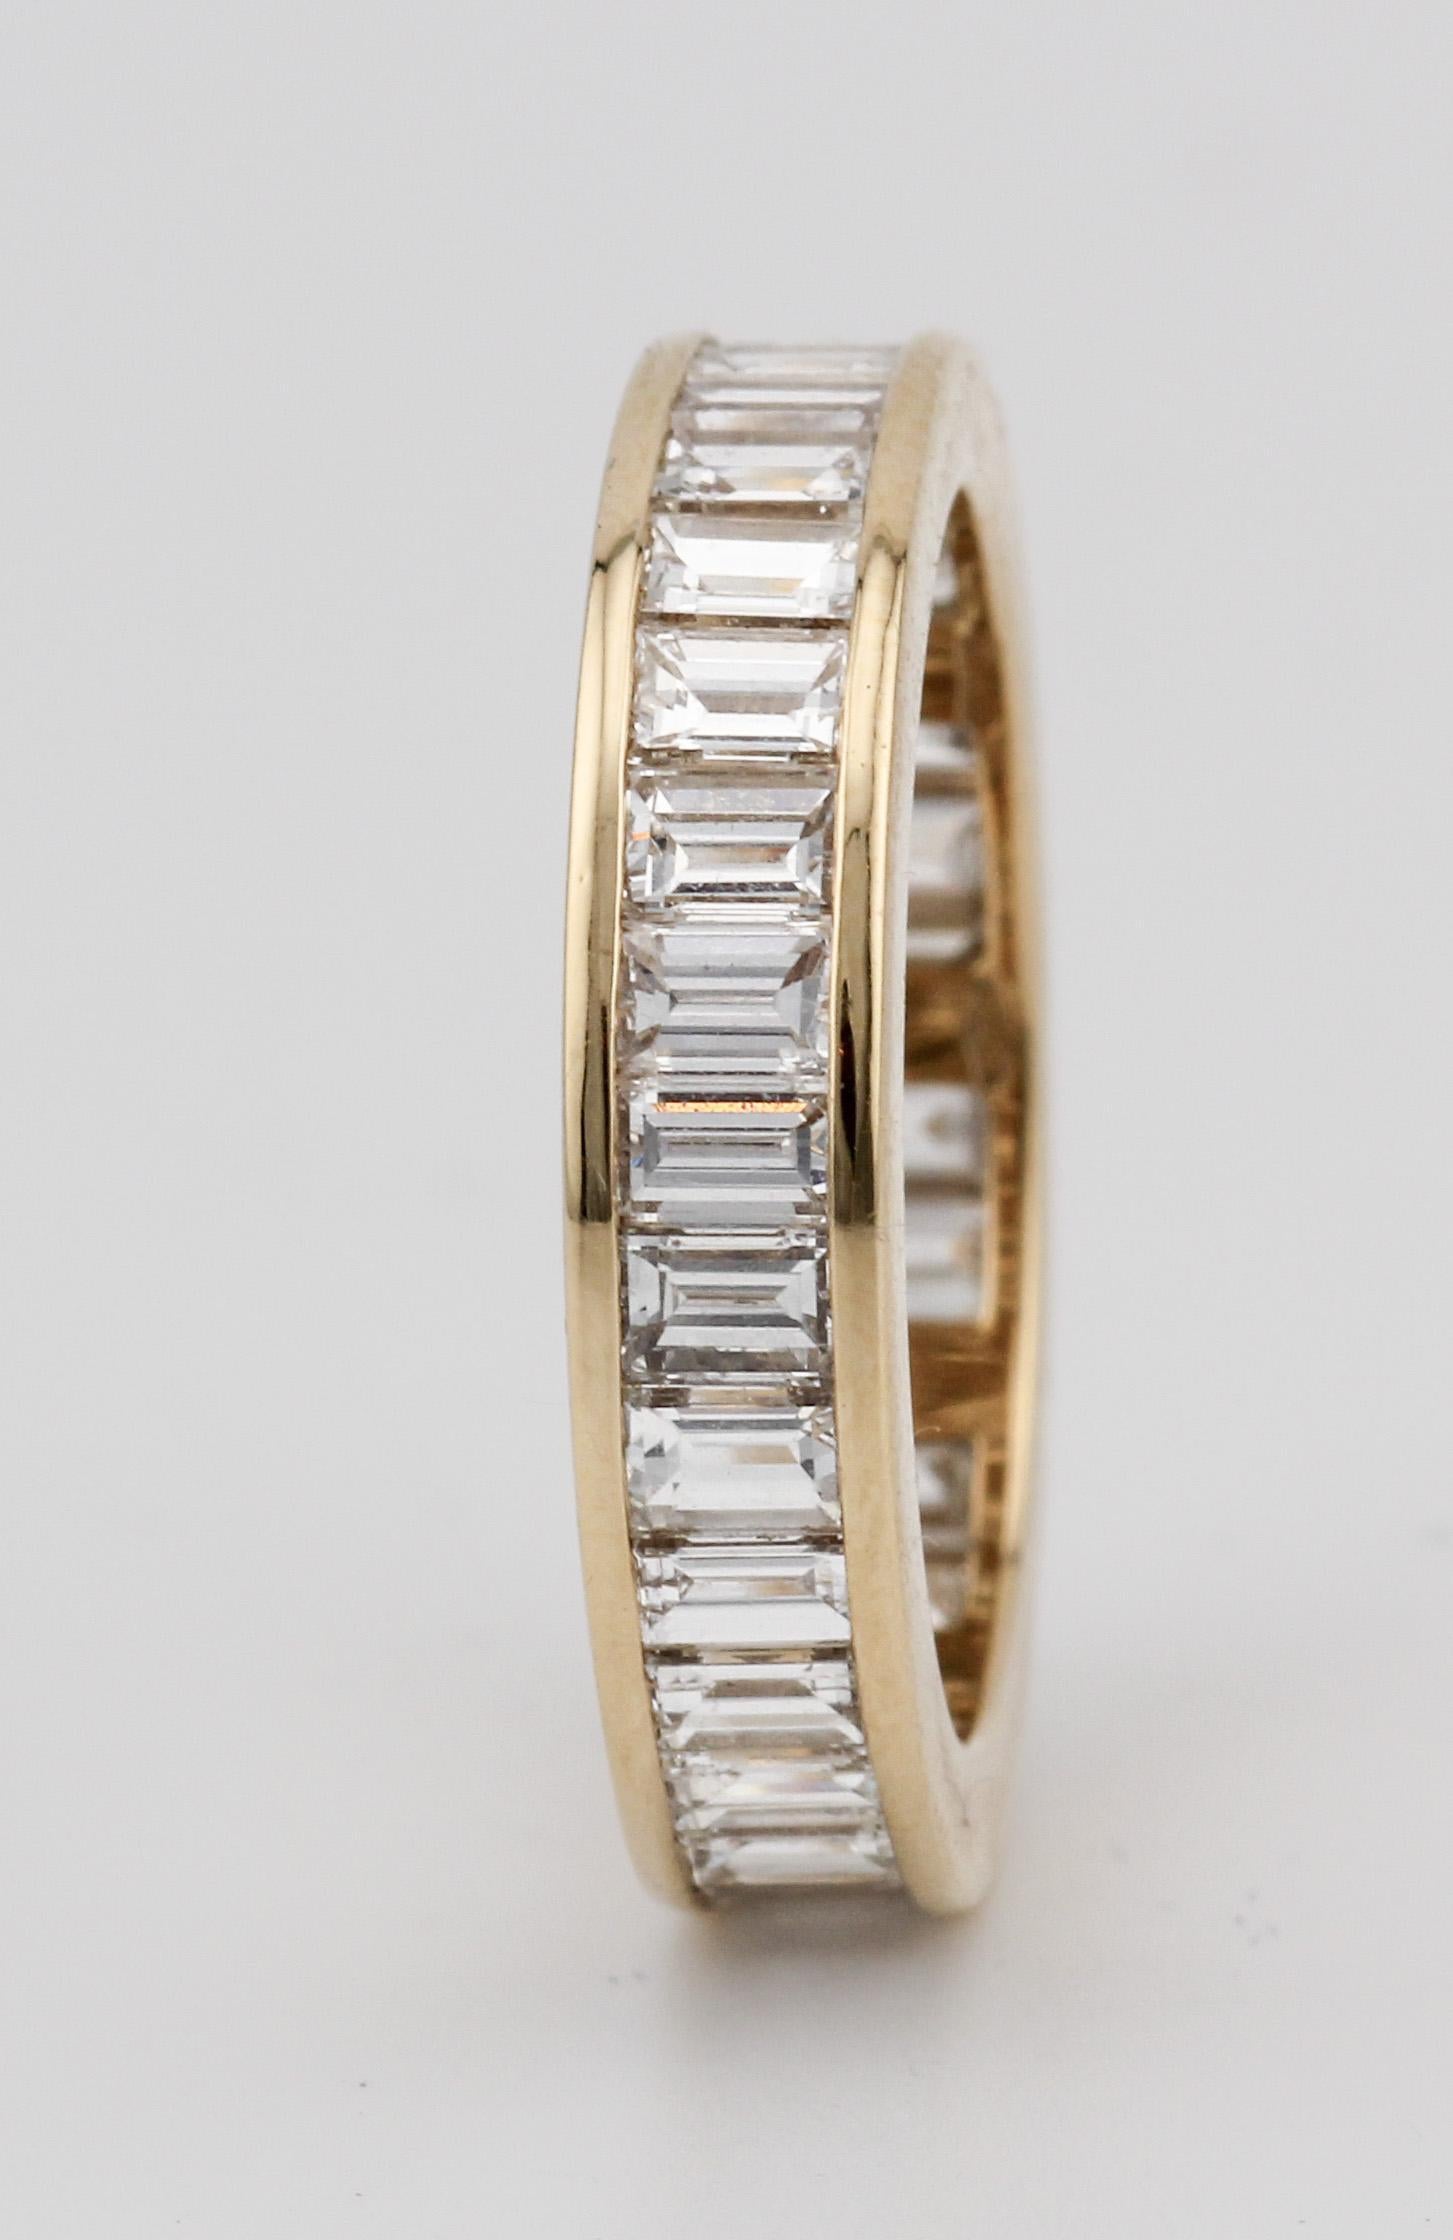 Le bracelet éternel en or jaune 18 carats à diamant baguette de Bulgari, qui incarne le summum du luxe et de la sophistication, redéfinit l'élégance grâce à son design intemporel et à sa qualité d'exécution inégalée. Exquisément réalisée par